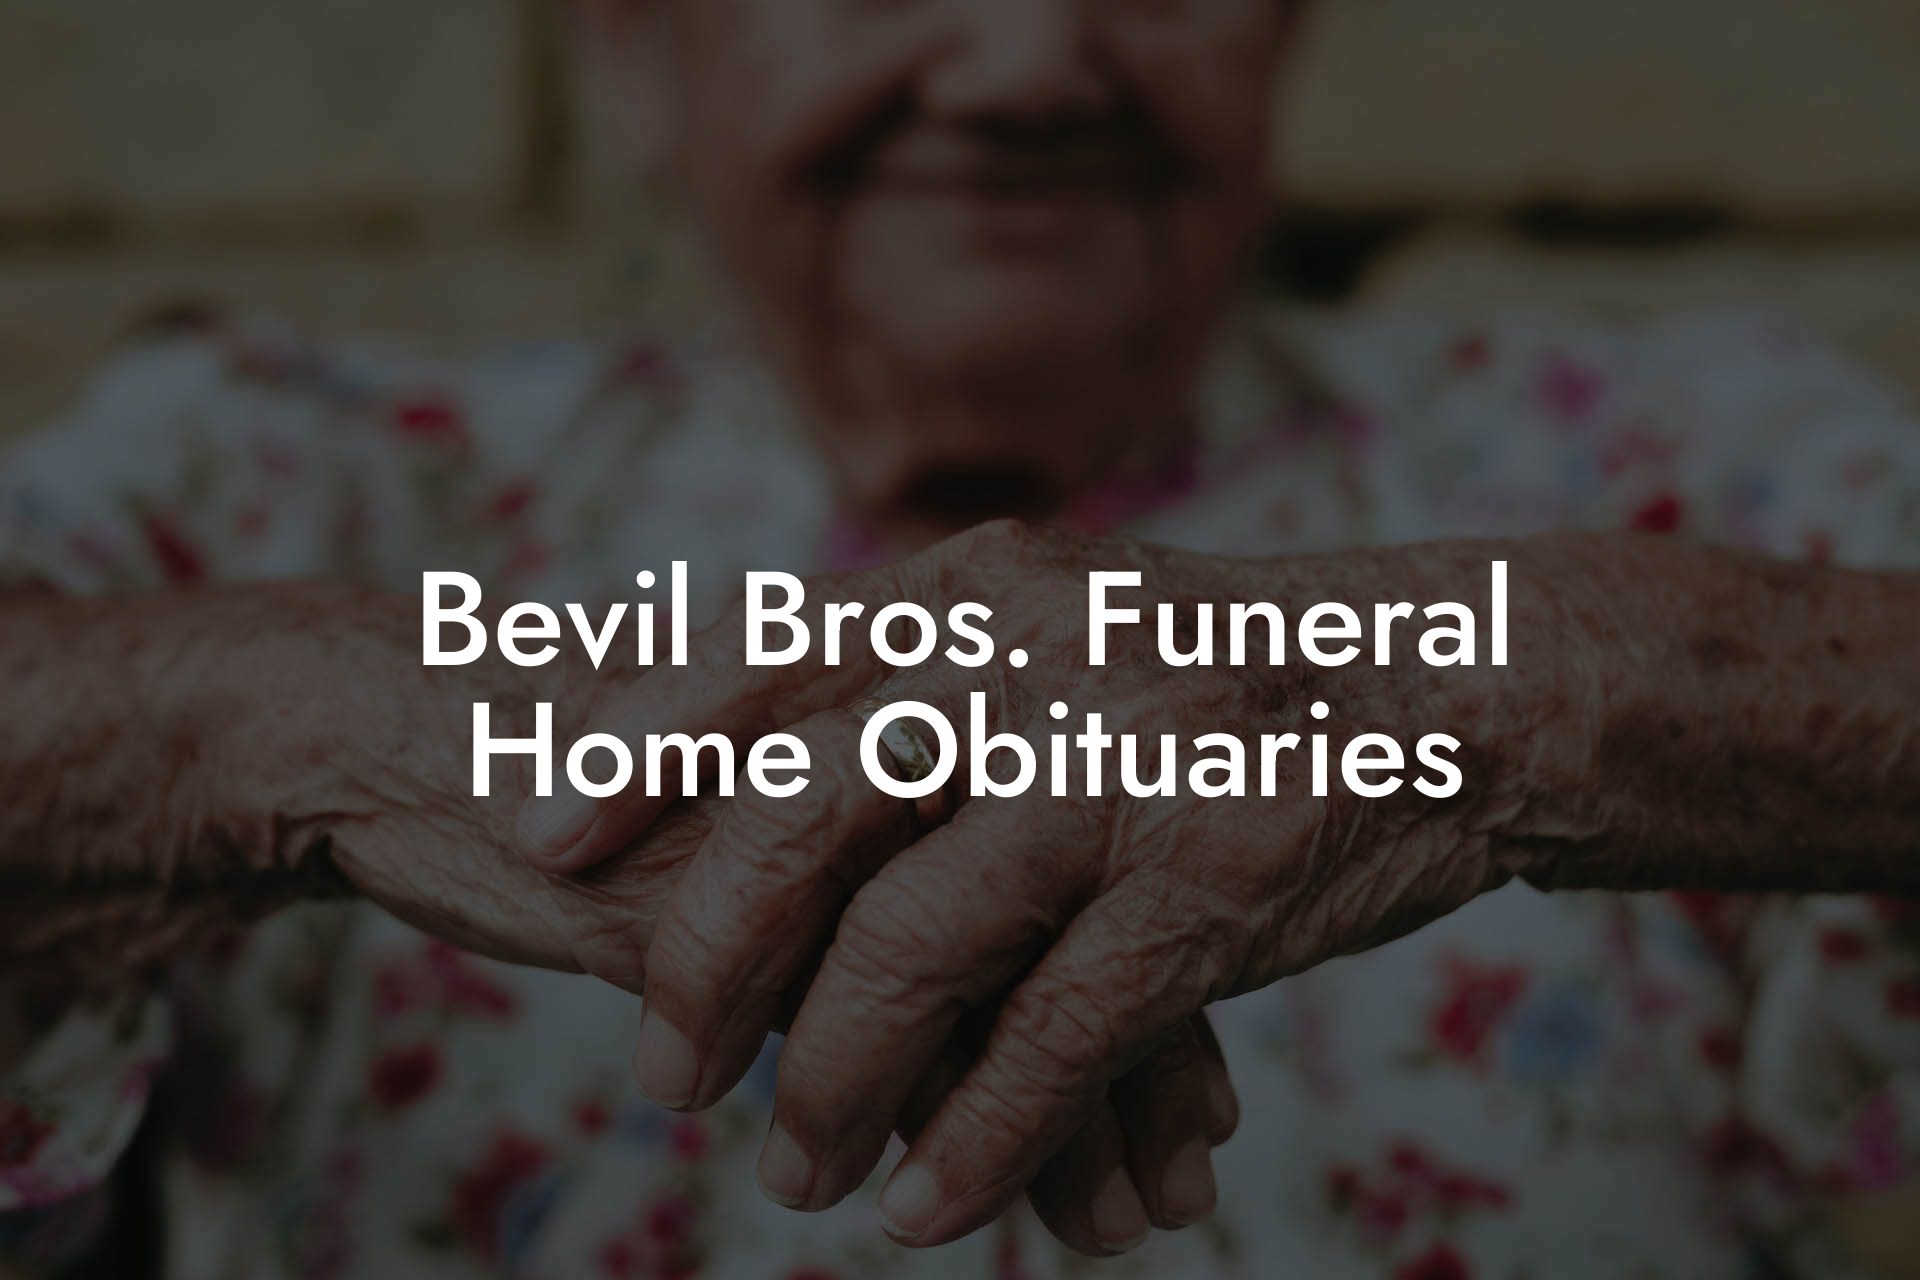 Bevil Bros. Funeral Home Obituaries